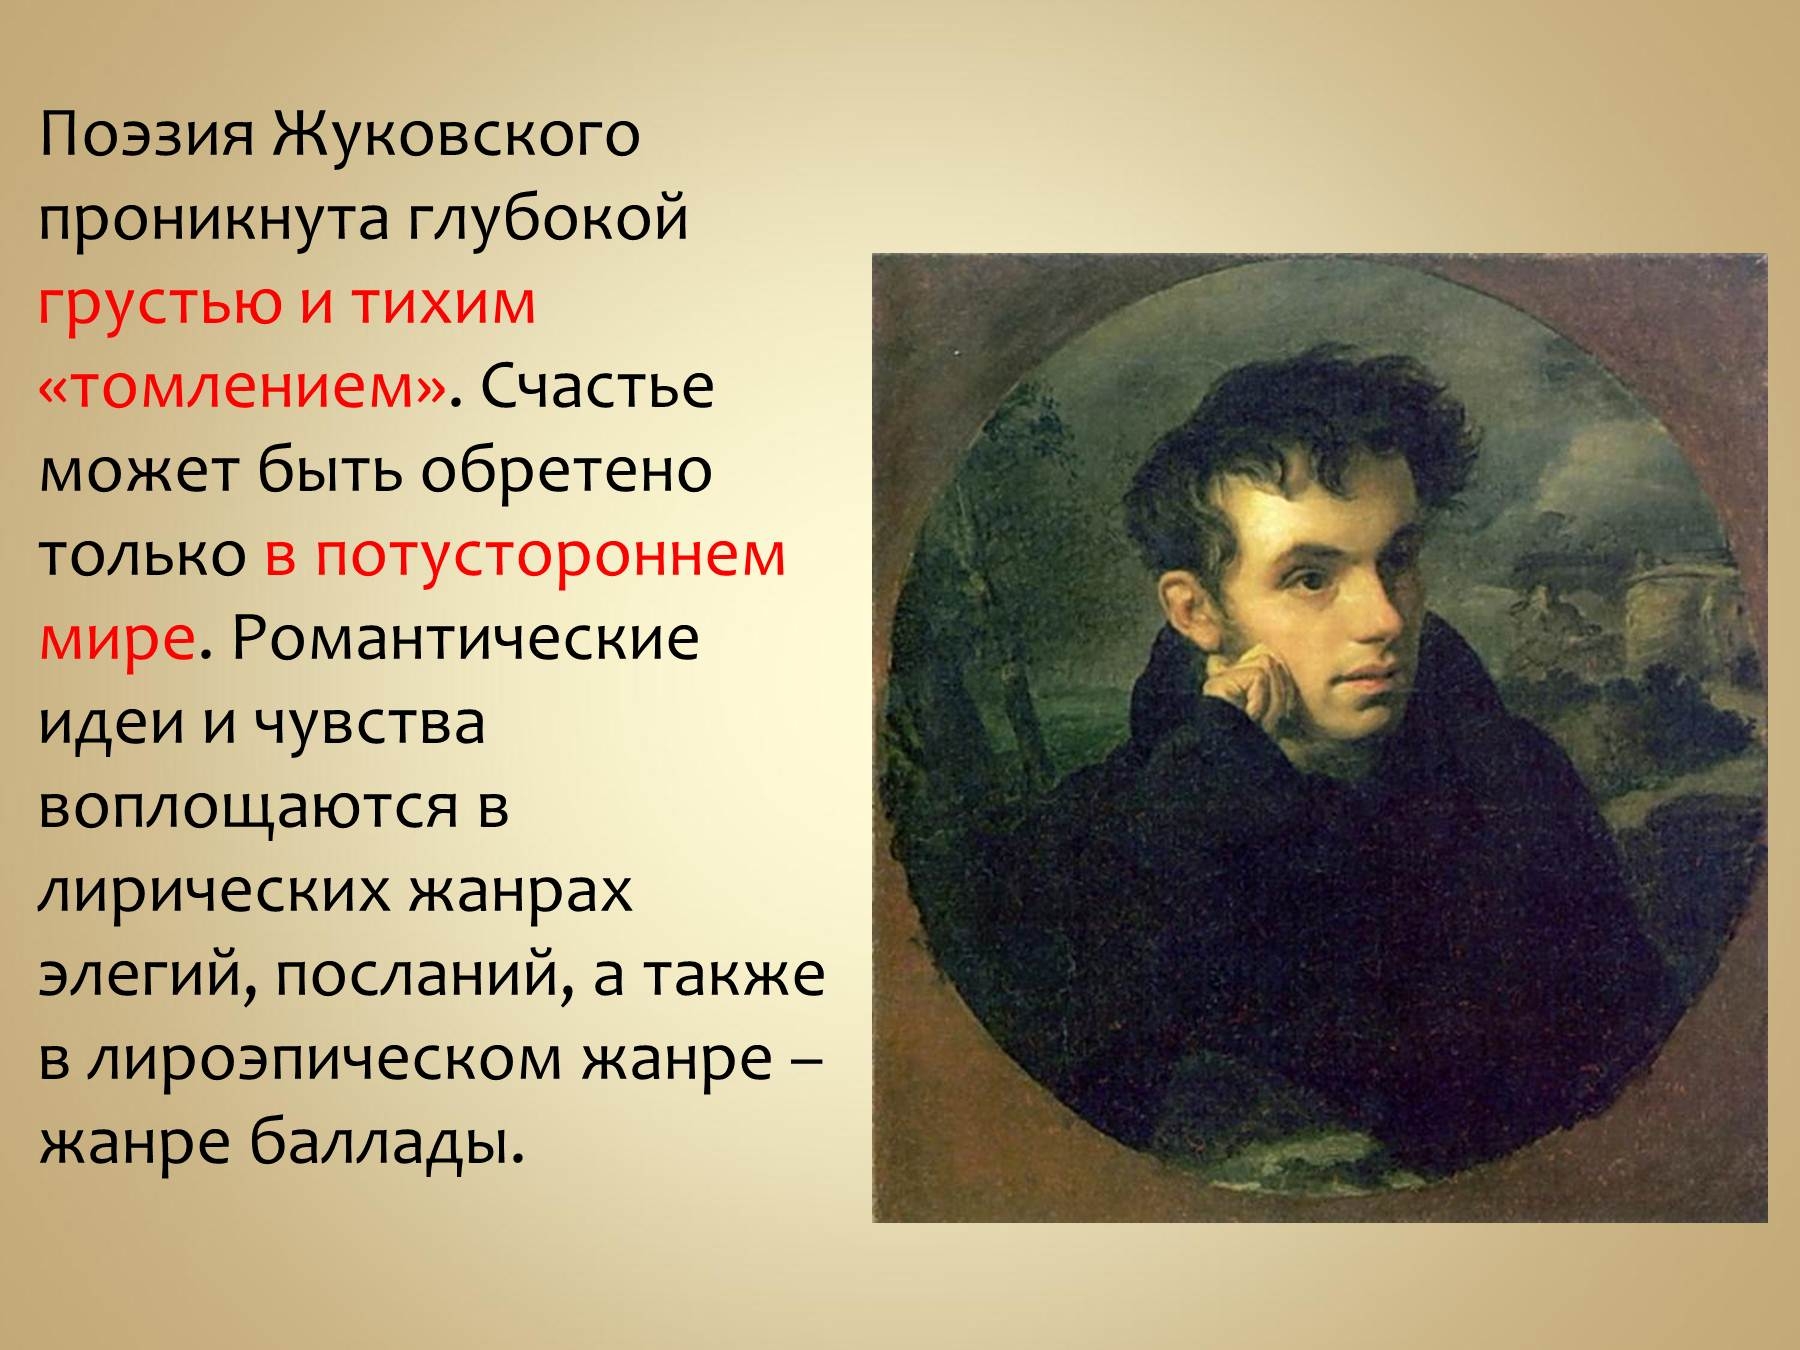 Жуковский написал произведение. Жуковский поэт 19 века. Жизнь и творчество Жуковского.